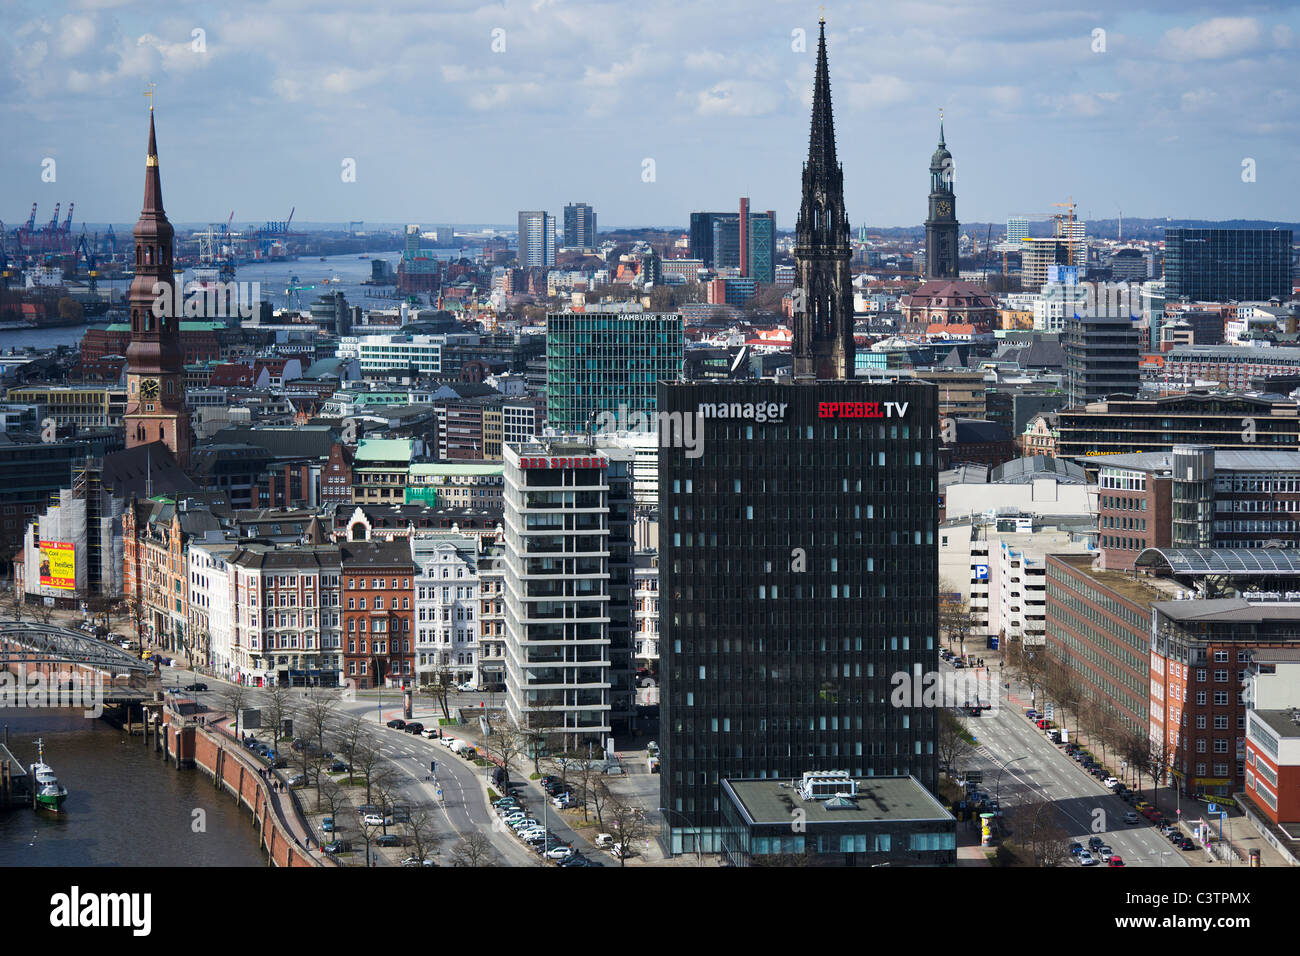 Luftaufnahme von Hamburg mit Spiegel TV Gebäude frontalen Ansicht Stockfoto